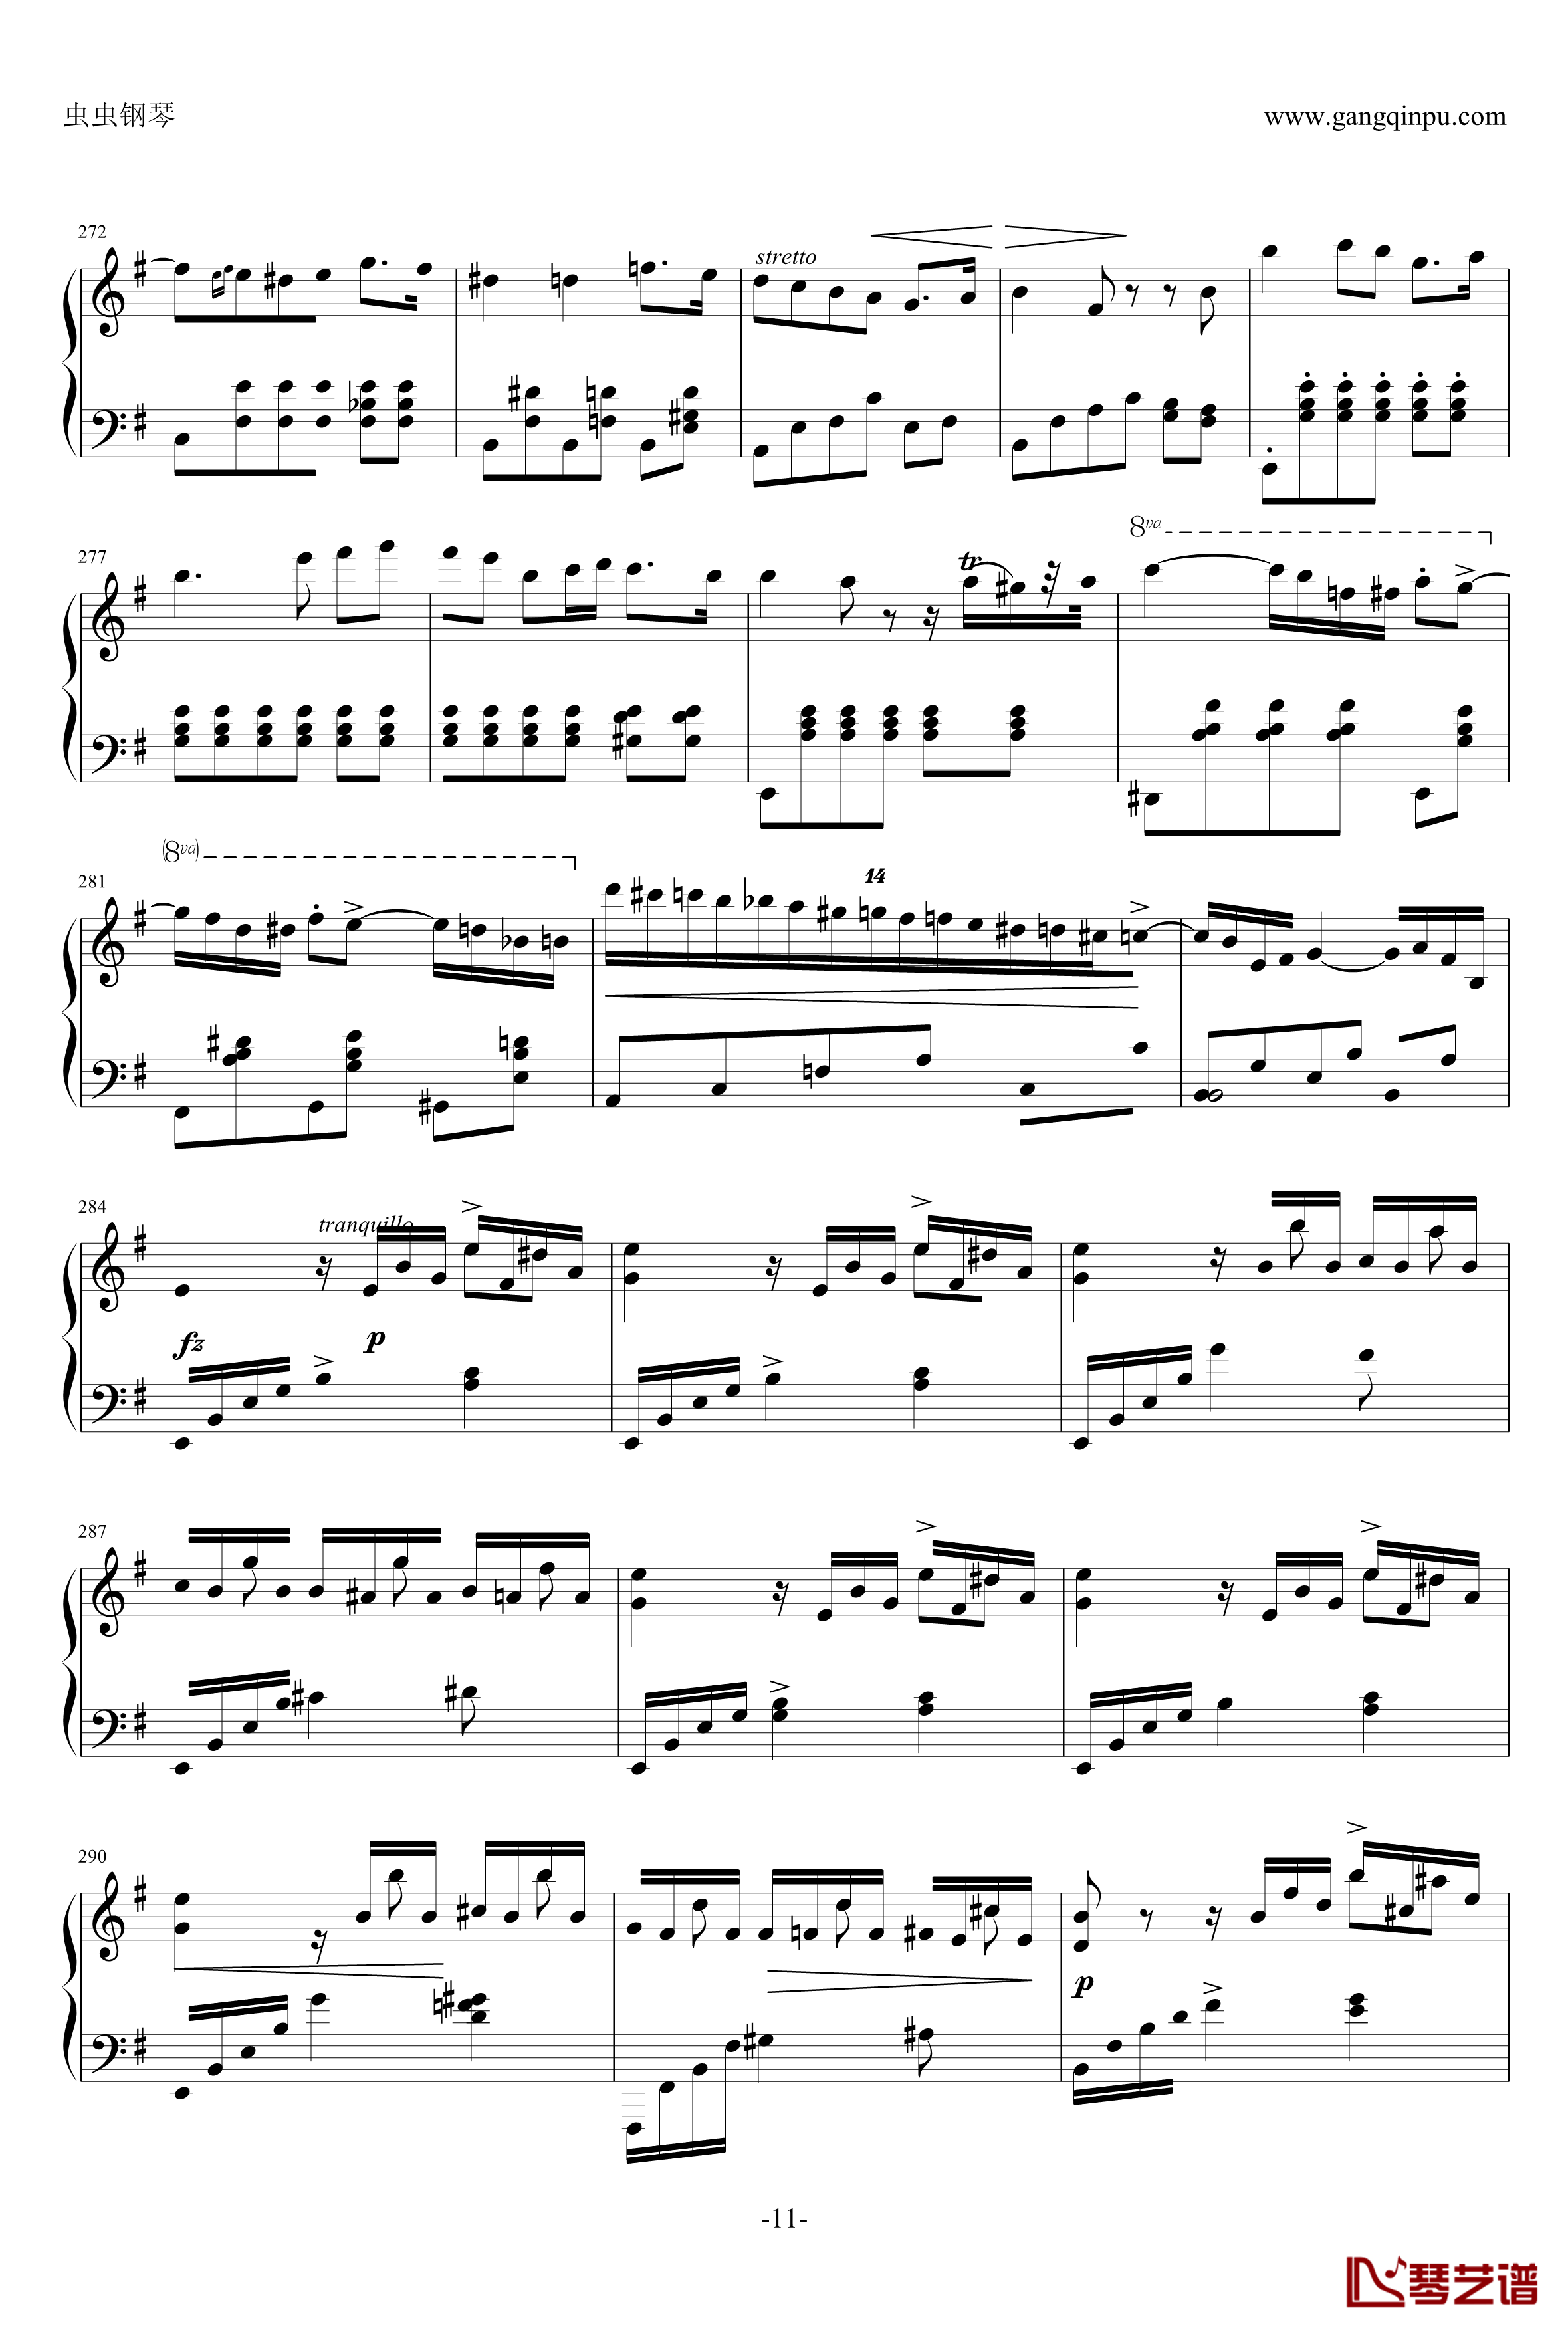 e小调钢琴协奏曲钢琴谱-乐之琴简易钢琴版-肖邦-chopin11